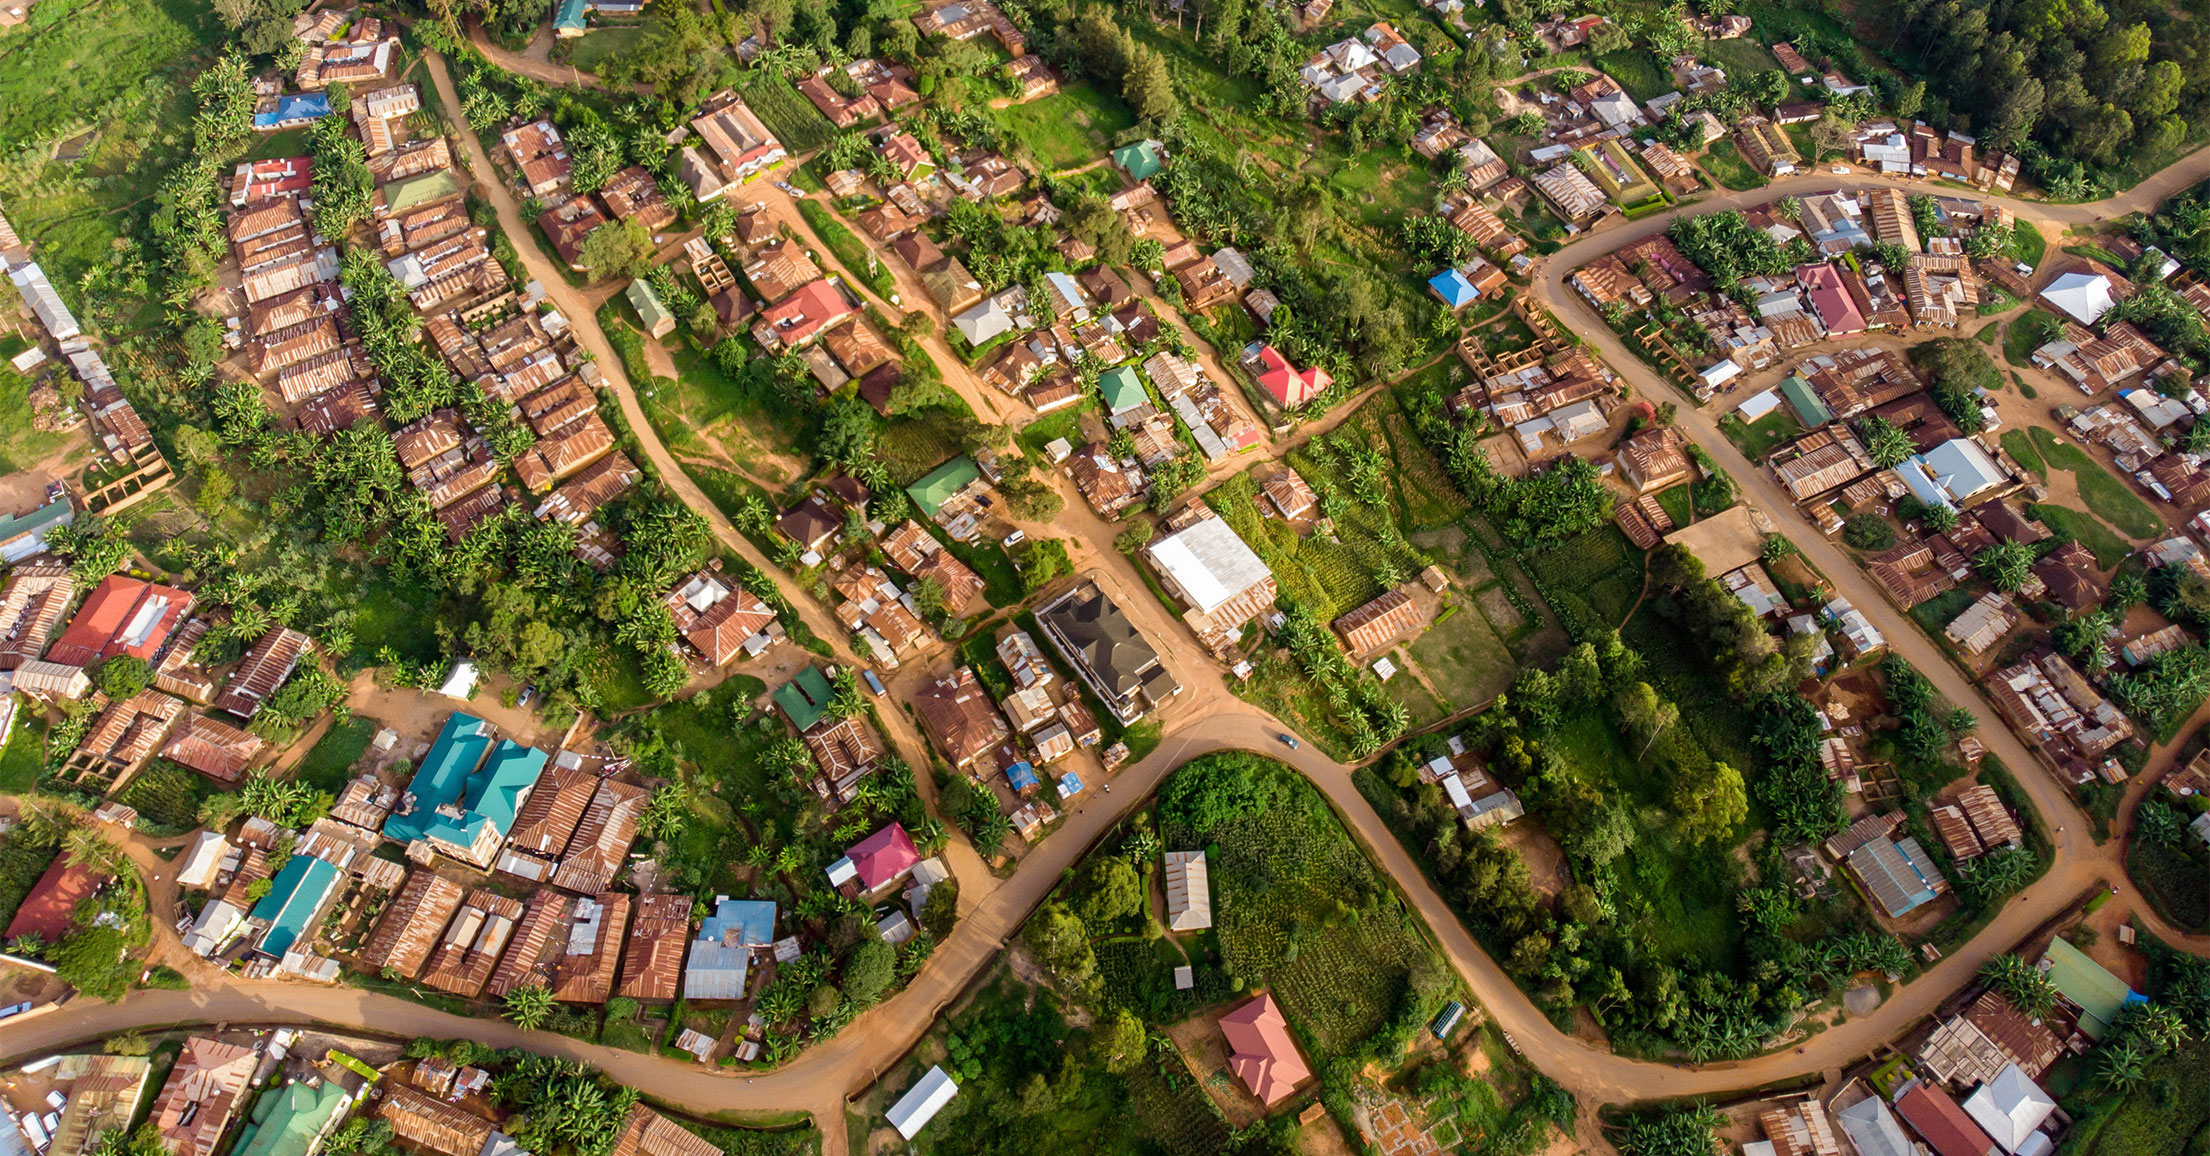 Overhead View of Roads in African Neighborhood